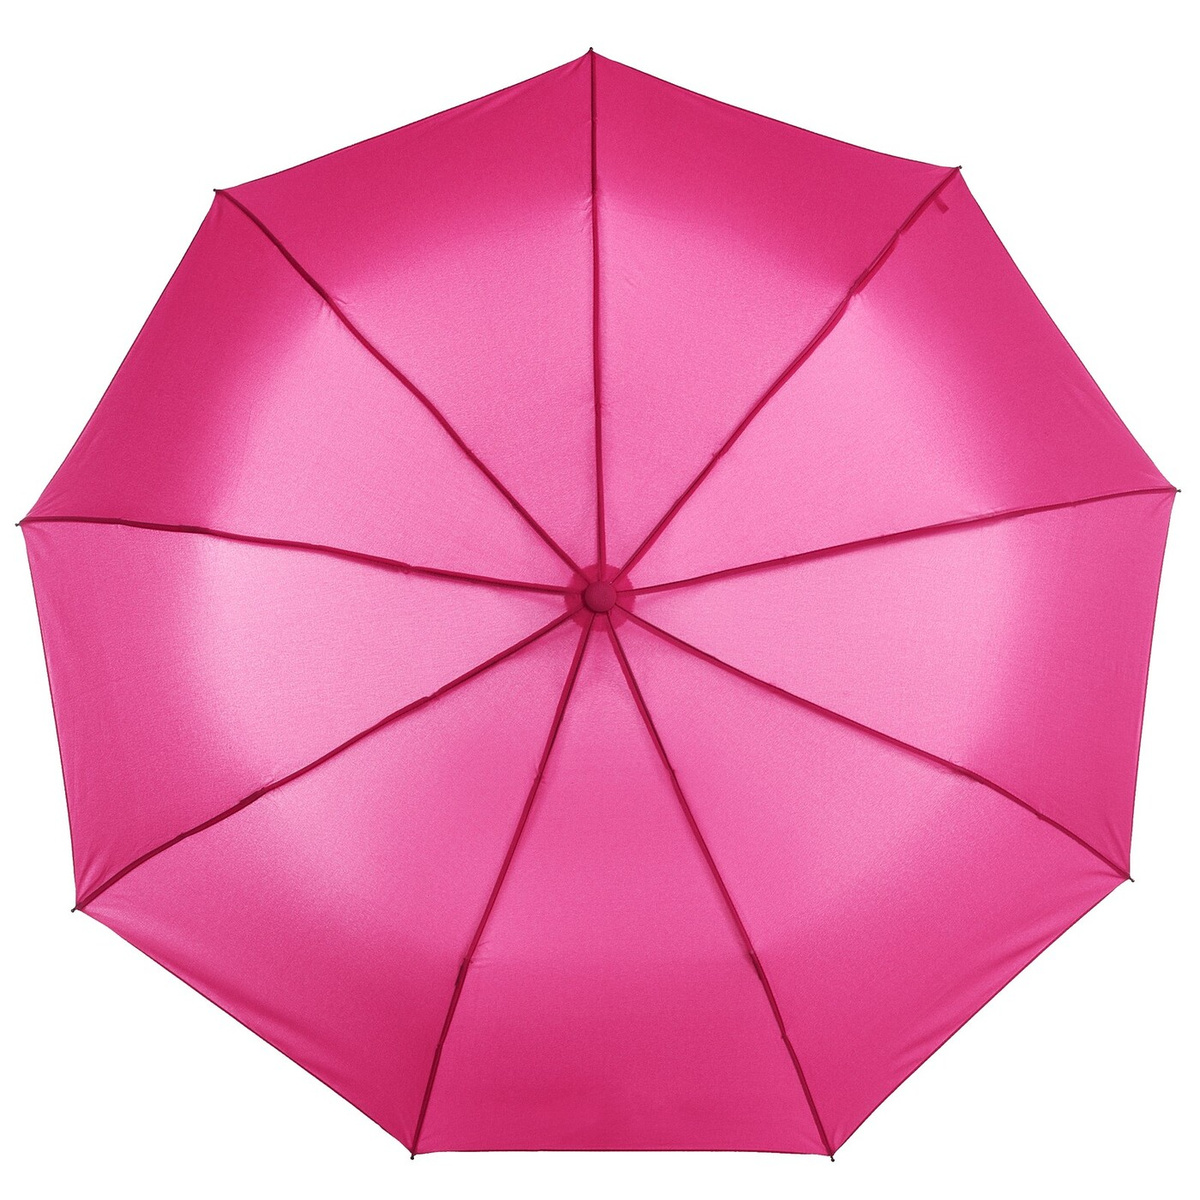 Купить Детский Зонтик Интернет Магазин Недорого